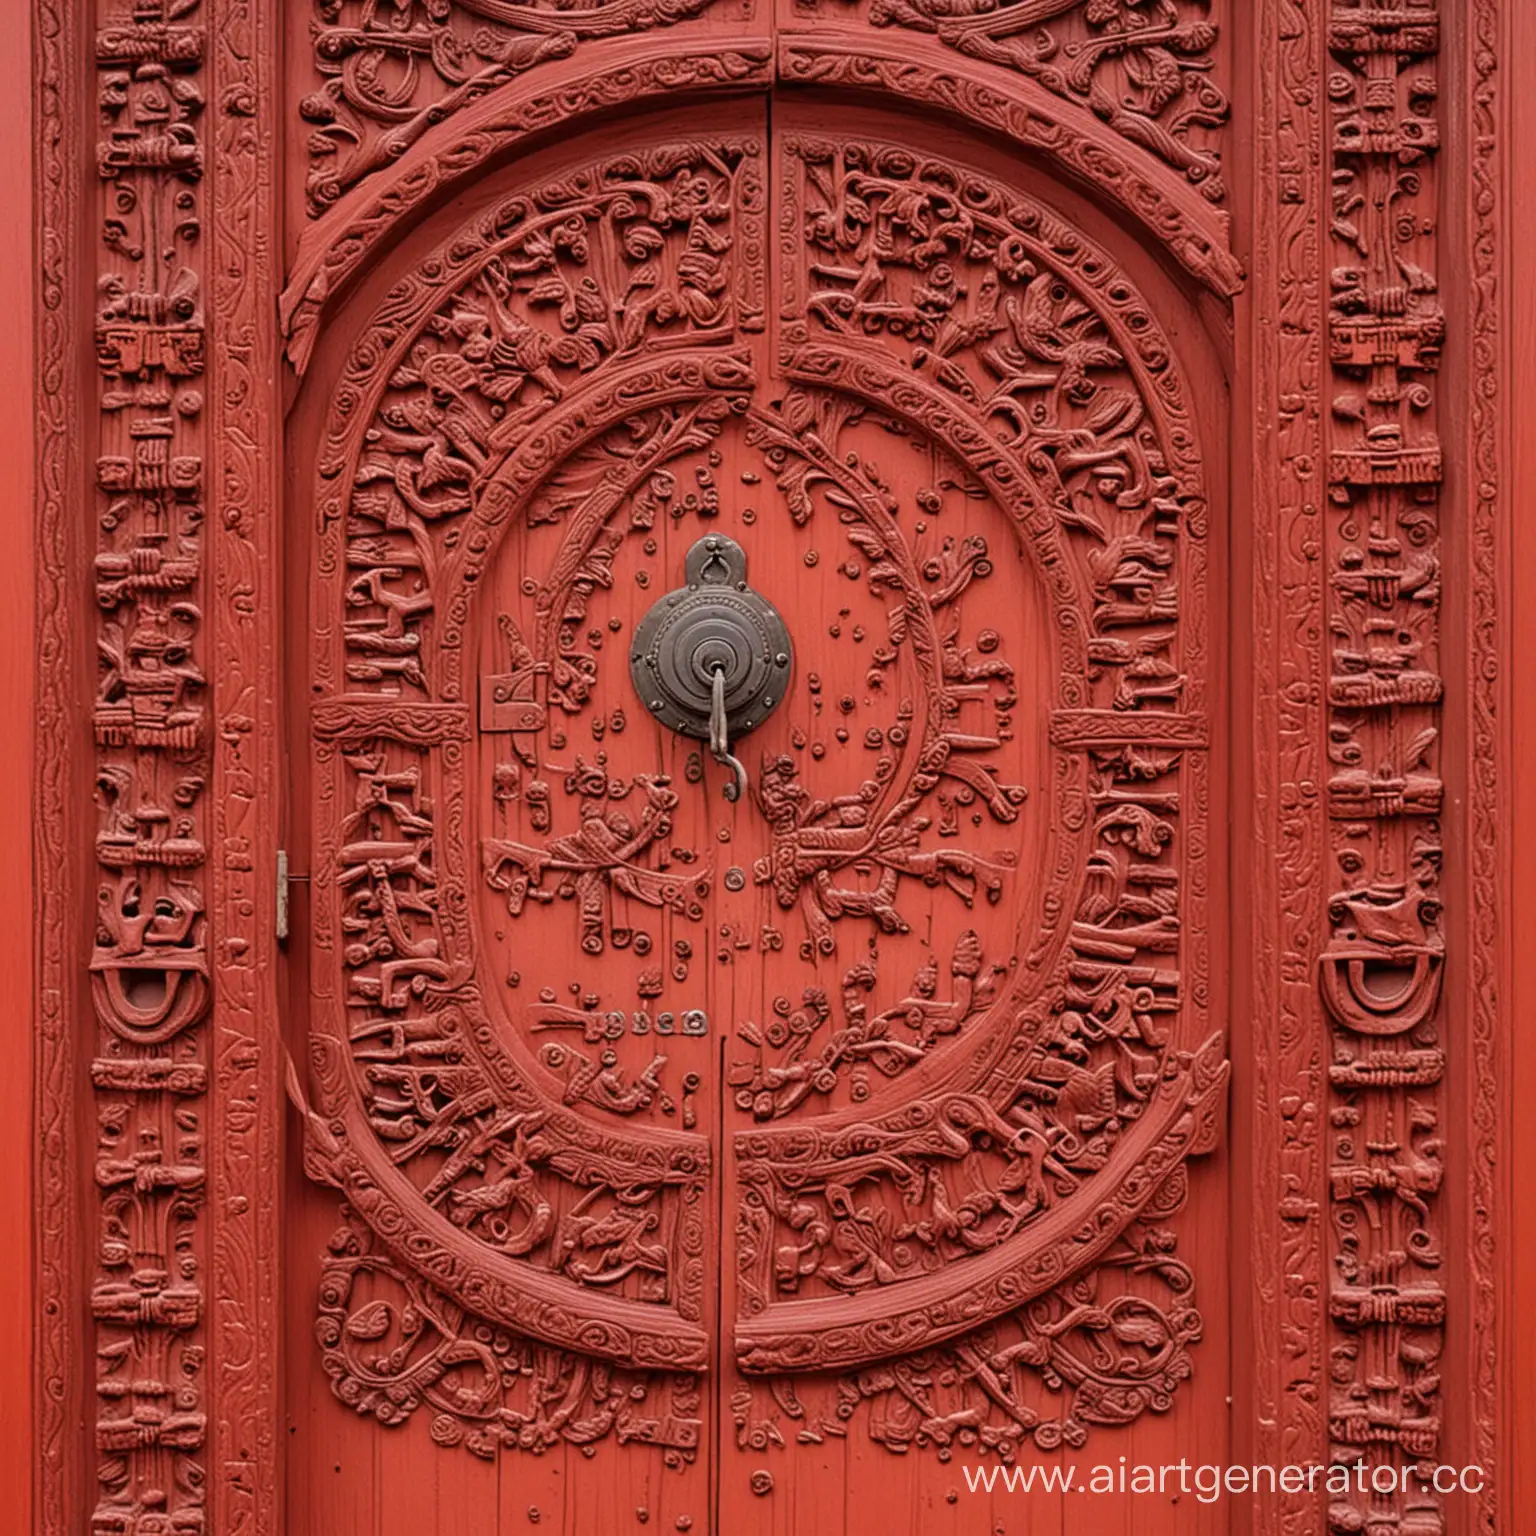 
красная дверь 
красивая деревянная дверь с элегантным резным узором, скорее всего ручной работы, с одним навесным замком, ручка тоже узорчатая с надписями, глазка нет.